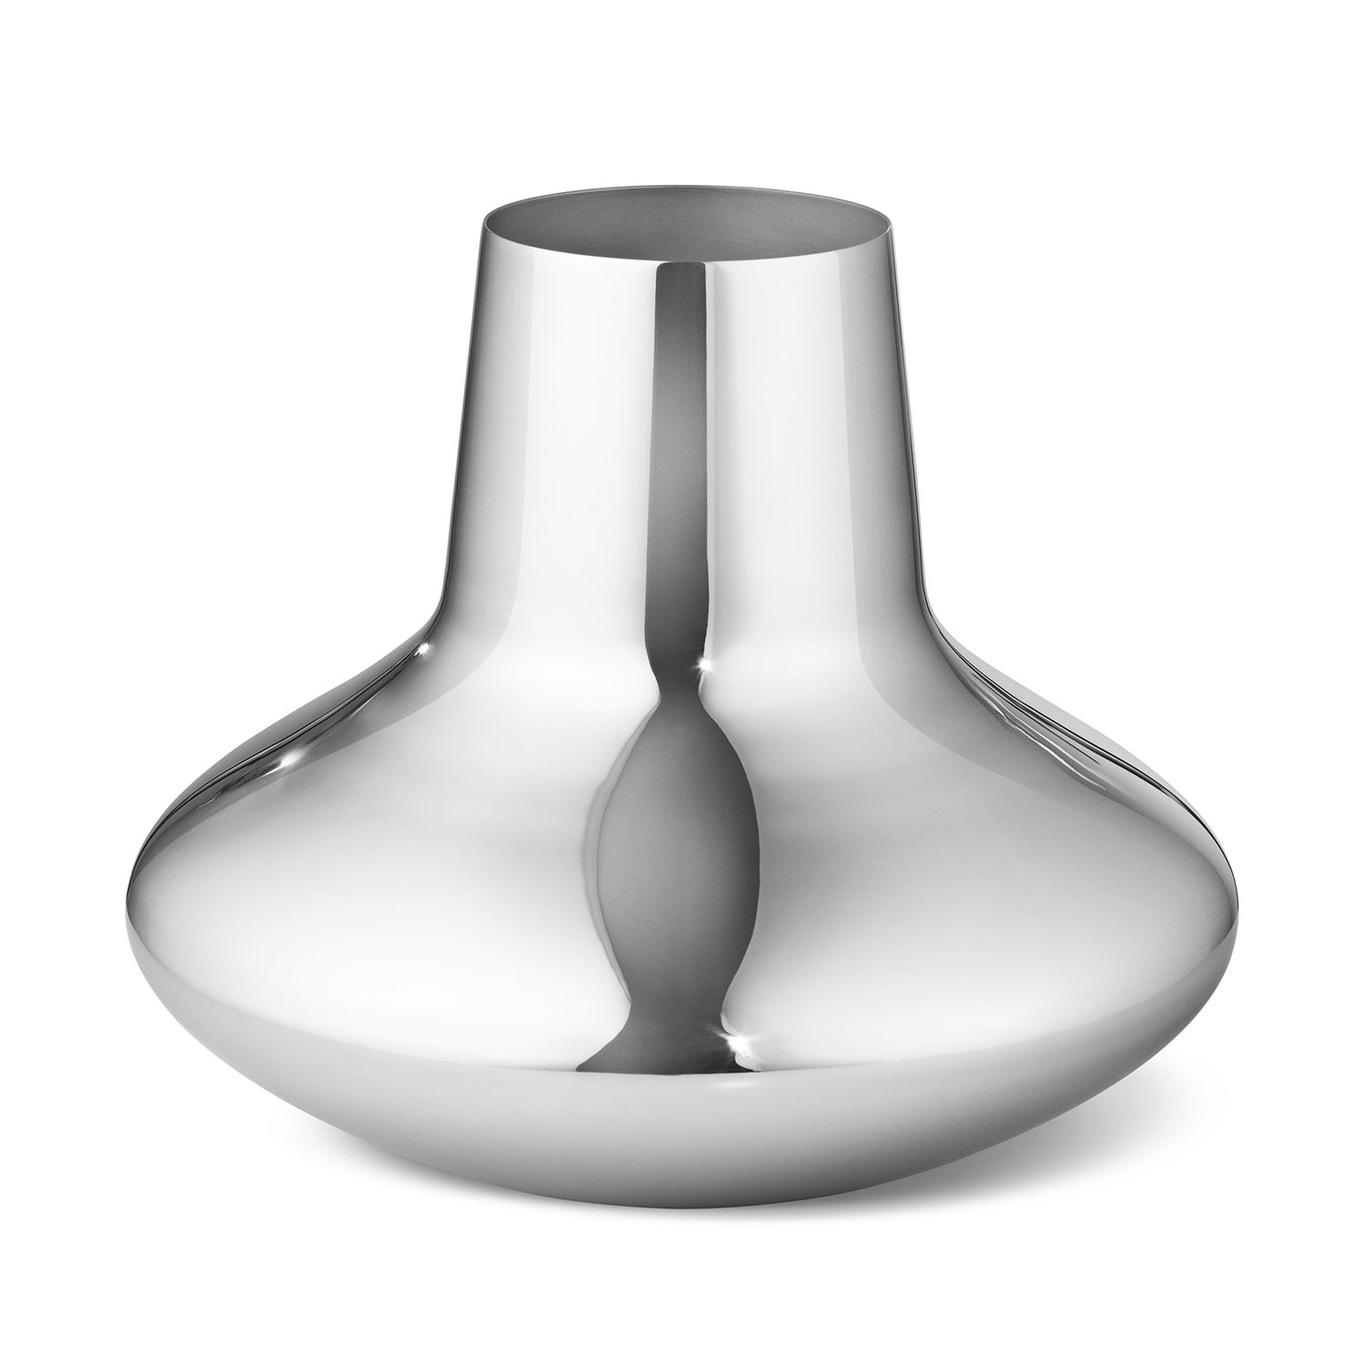 Henning Koppel Vase Medium, Stainless Steel